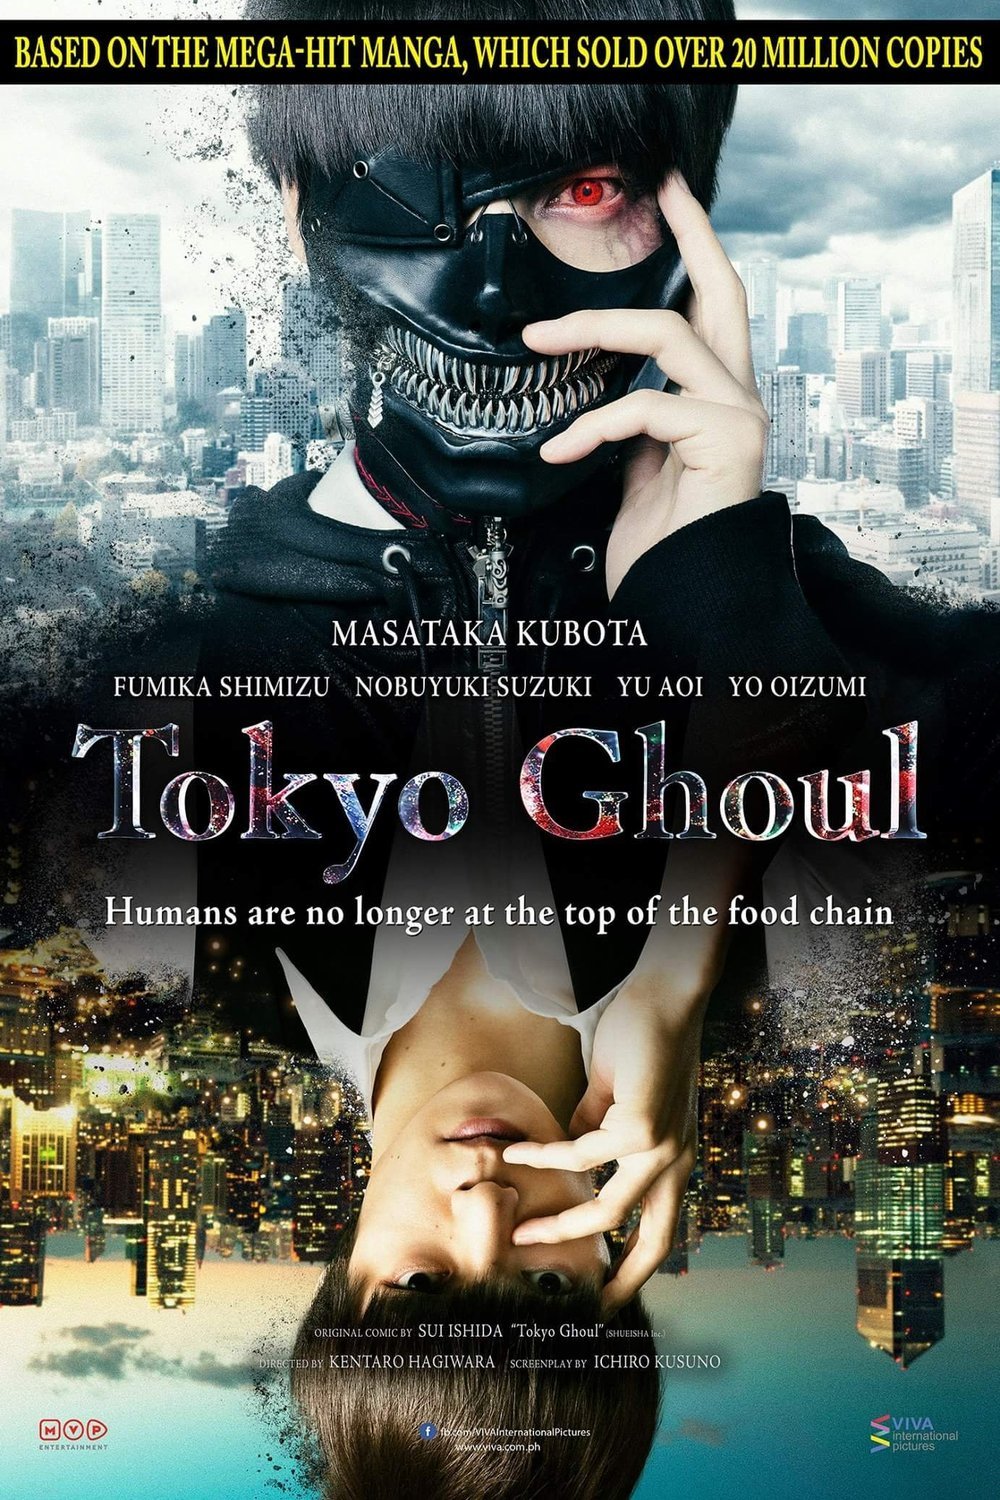 Poster of the movie Tôkyô gûru